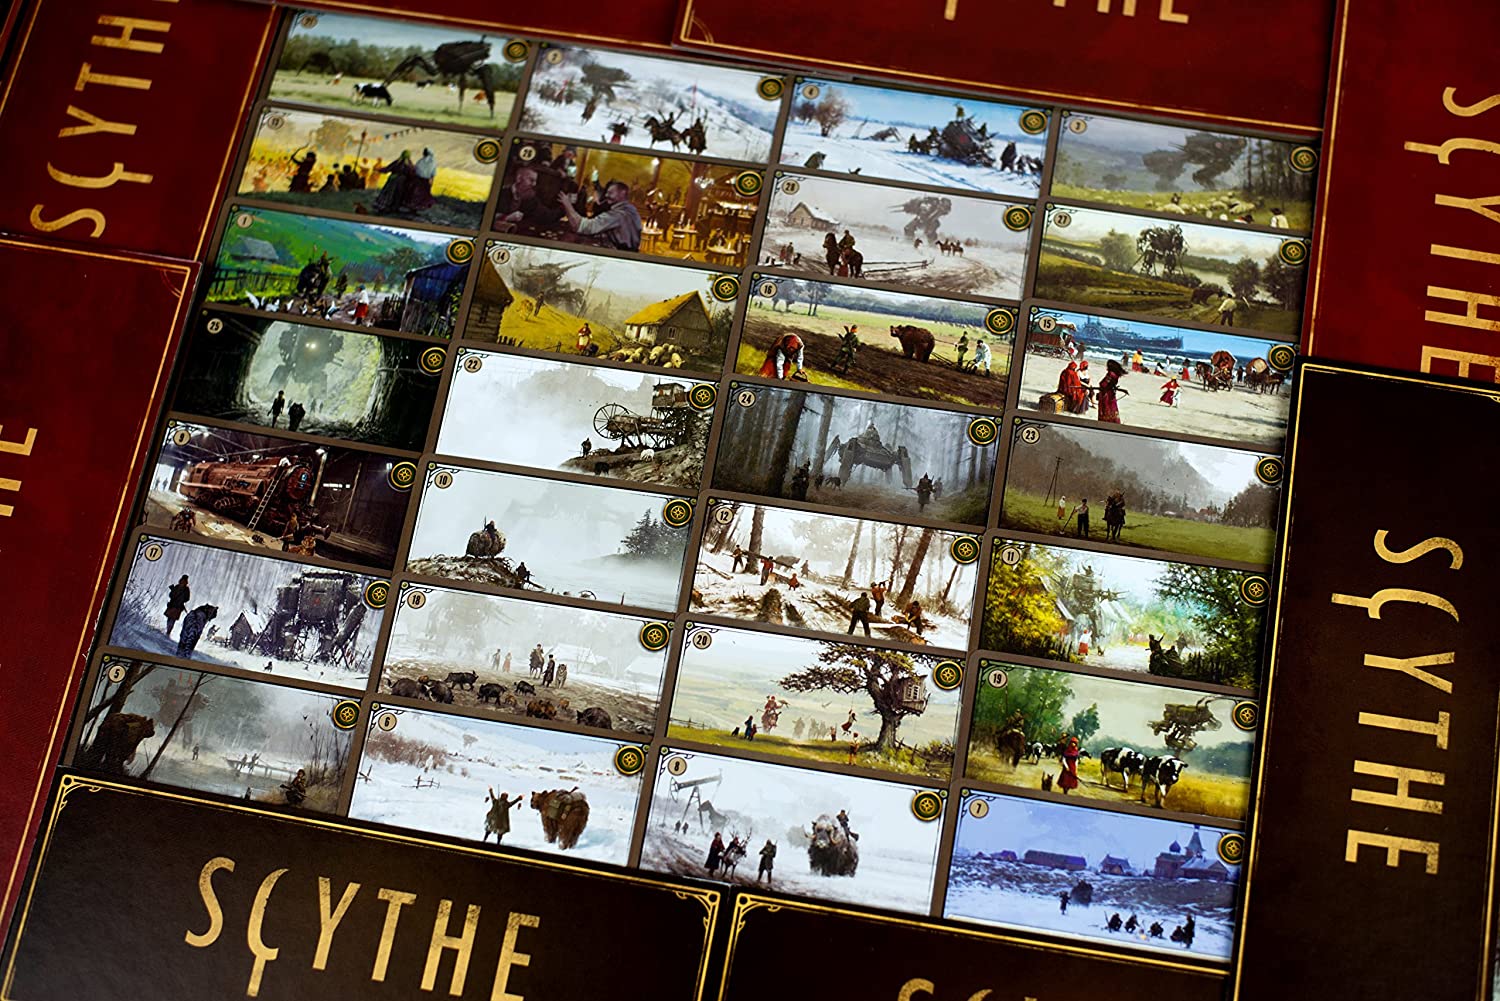 Scythe Game Image 1